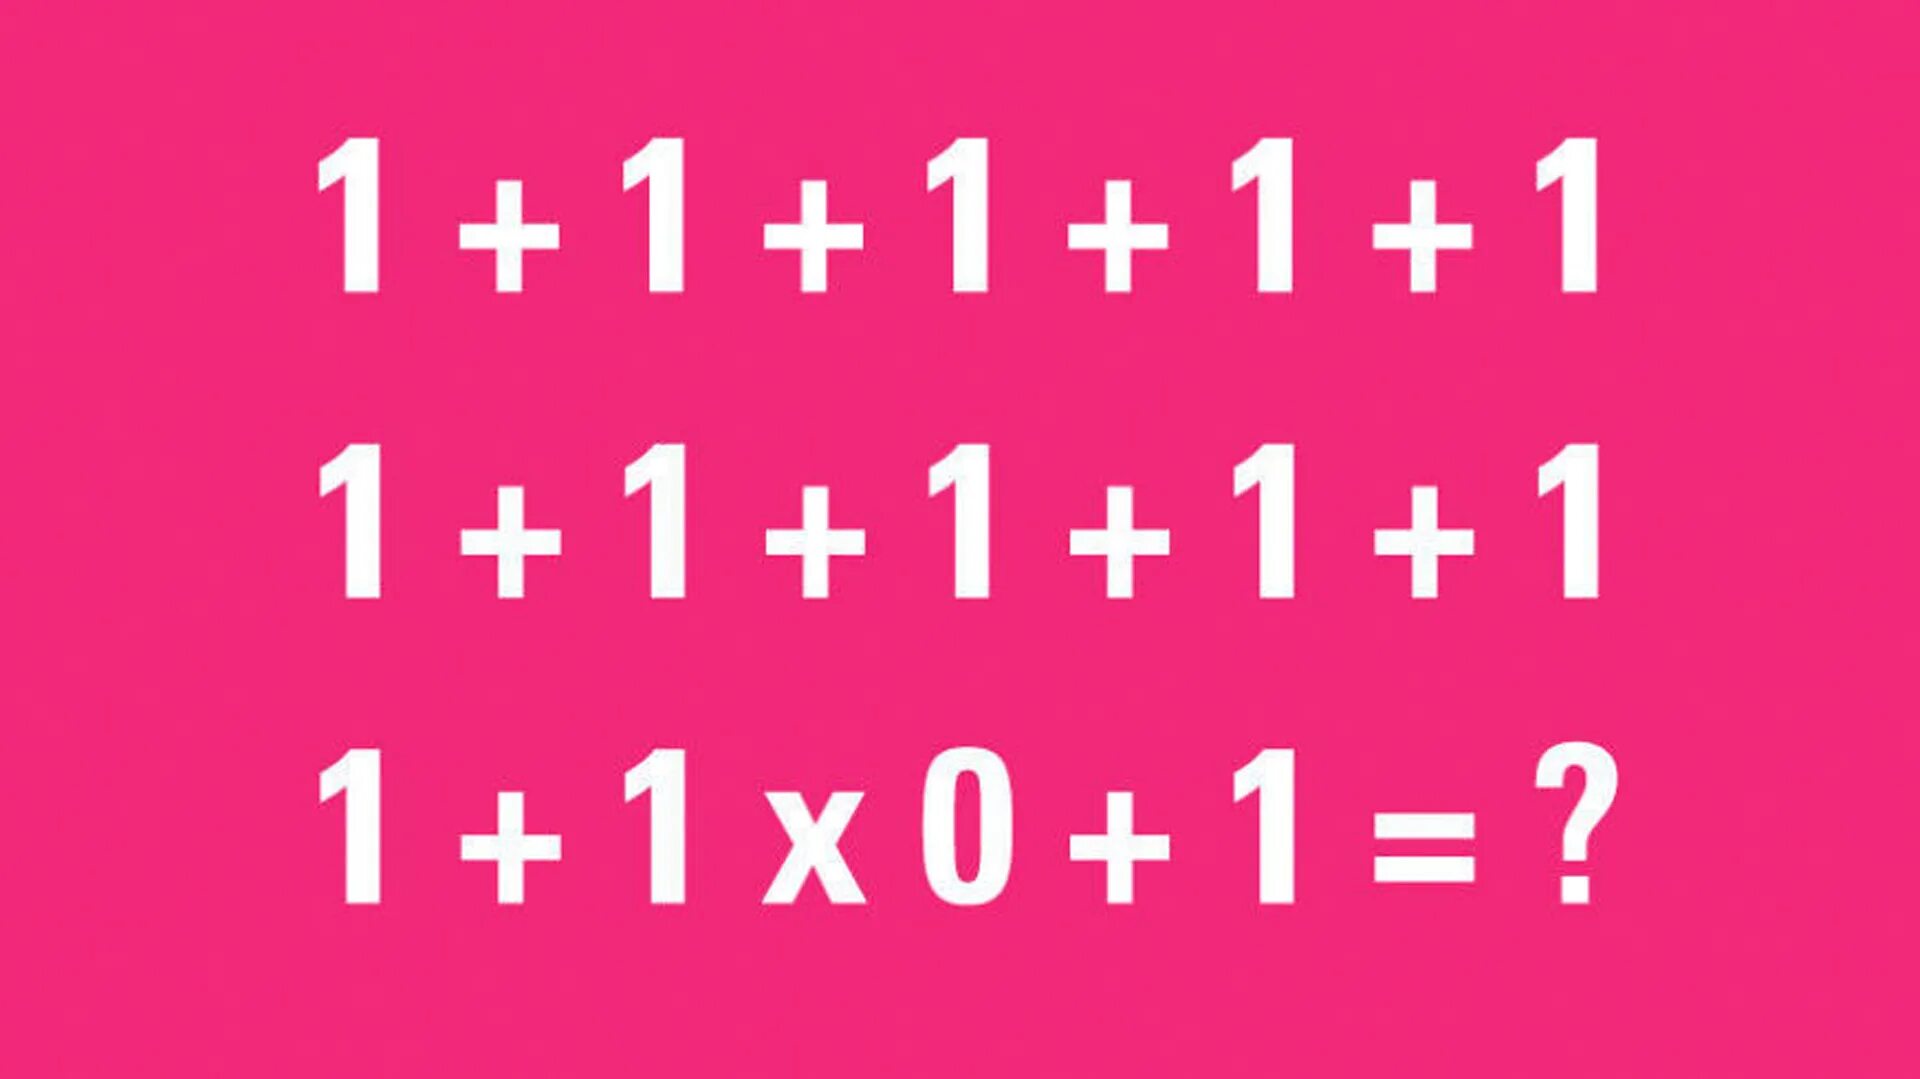 Сколько будет 1 1 будет синий. Загадка 1+1+1+1. 90 Людей не могут решить эту задачу. Головоломка 1+1+1+1+1+1+1+1+1+1+1+1*0+1 ответ. Загадки на логику с ответами 1+1+1+1+1 1+1 *0.